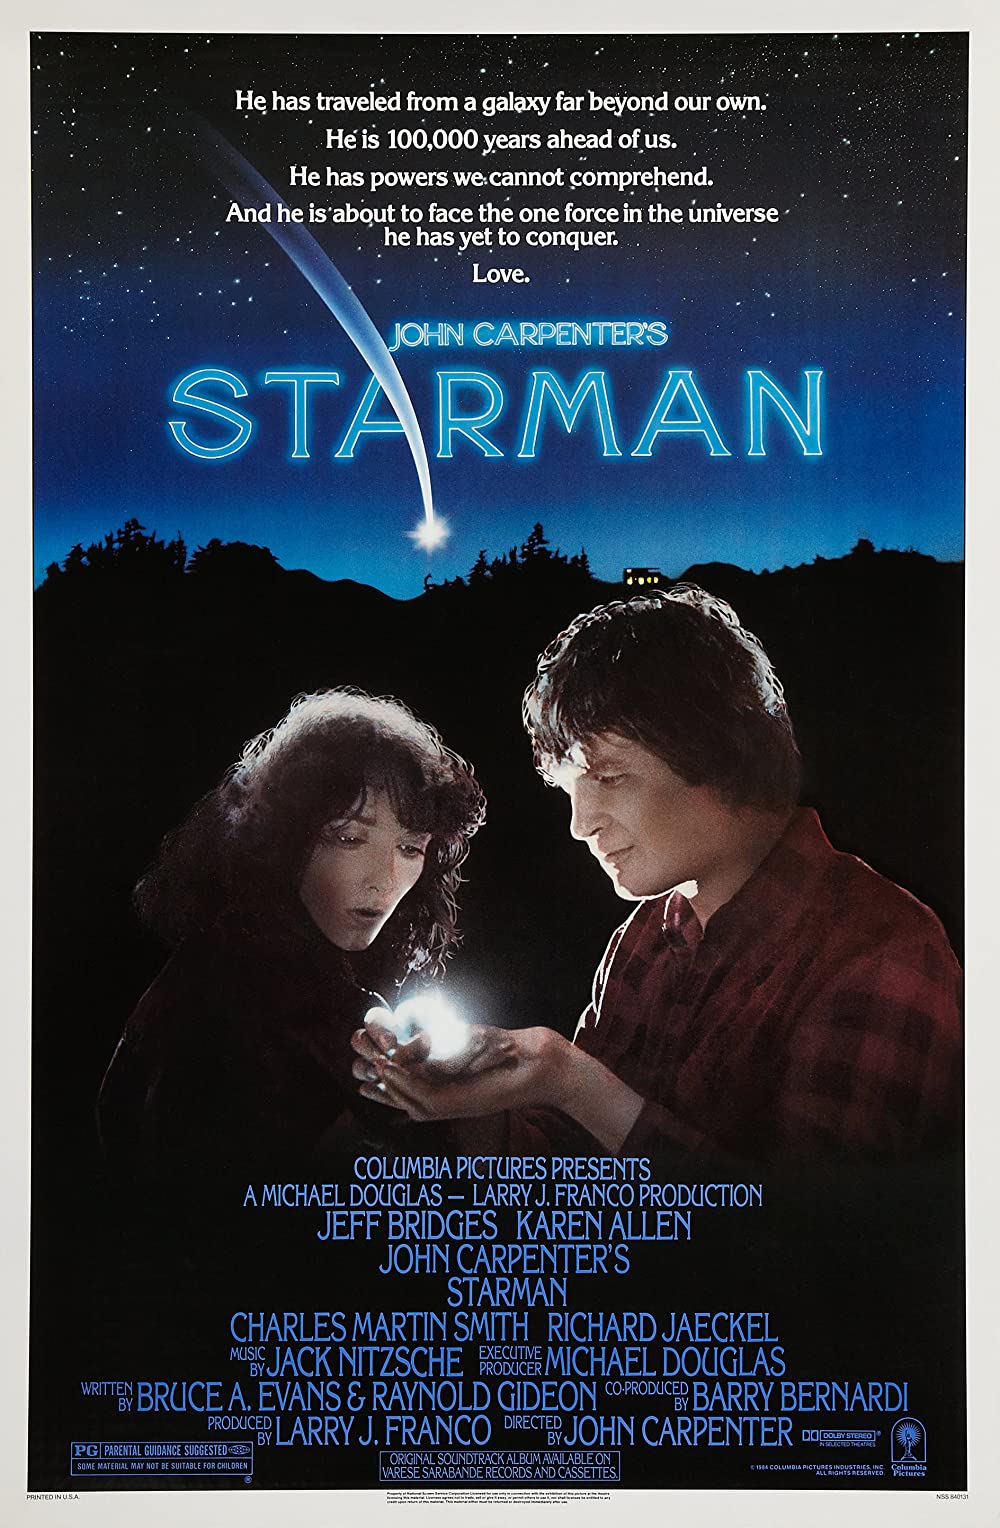 ดูหนังออนไลน์ฟรี Starman (1984) สตาร์แมน มนุษย์ดวงดาว หนังเต็มเรื่อง หนังมาสเตอร์ ดูหนังHD ดูหนังออนไลน์ ดูหนังใหม่